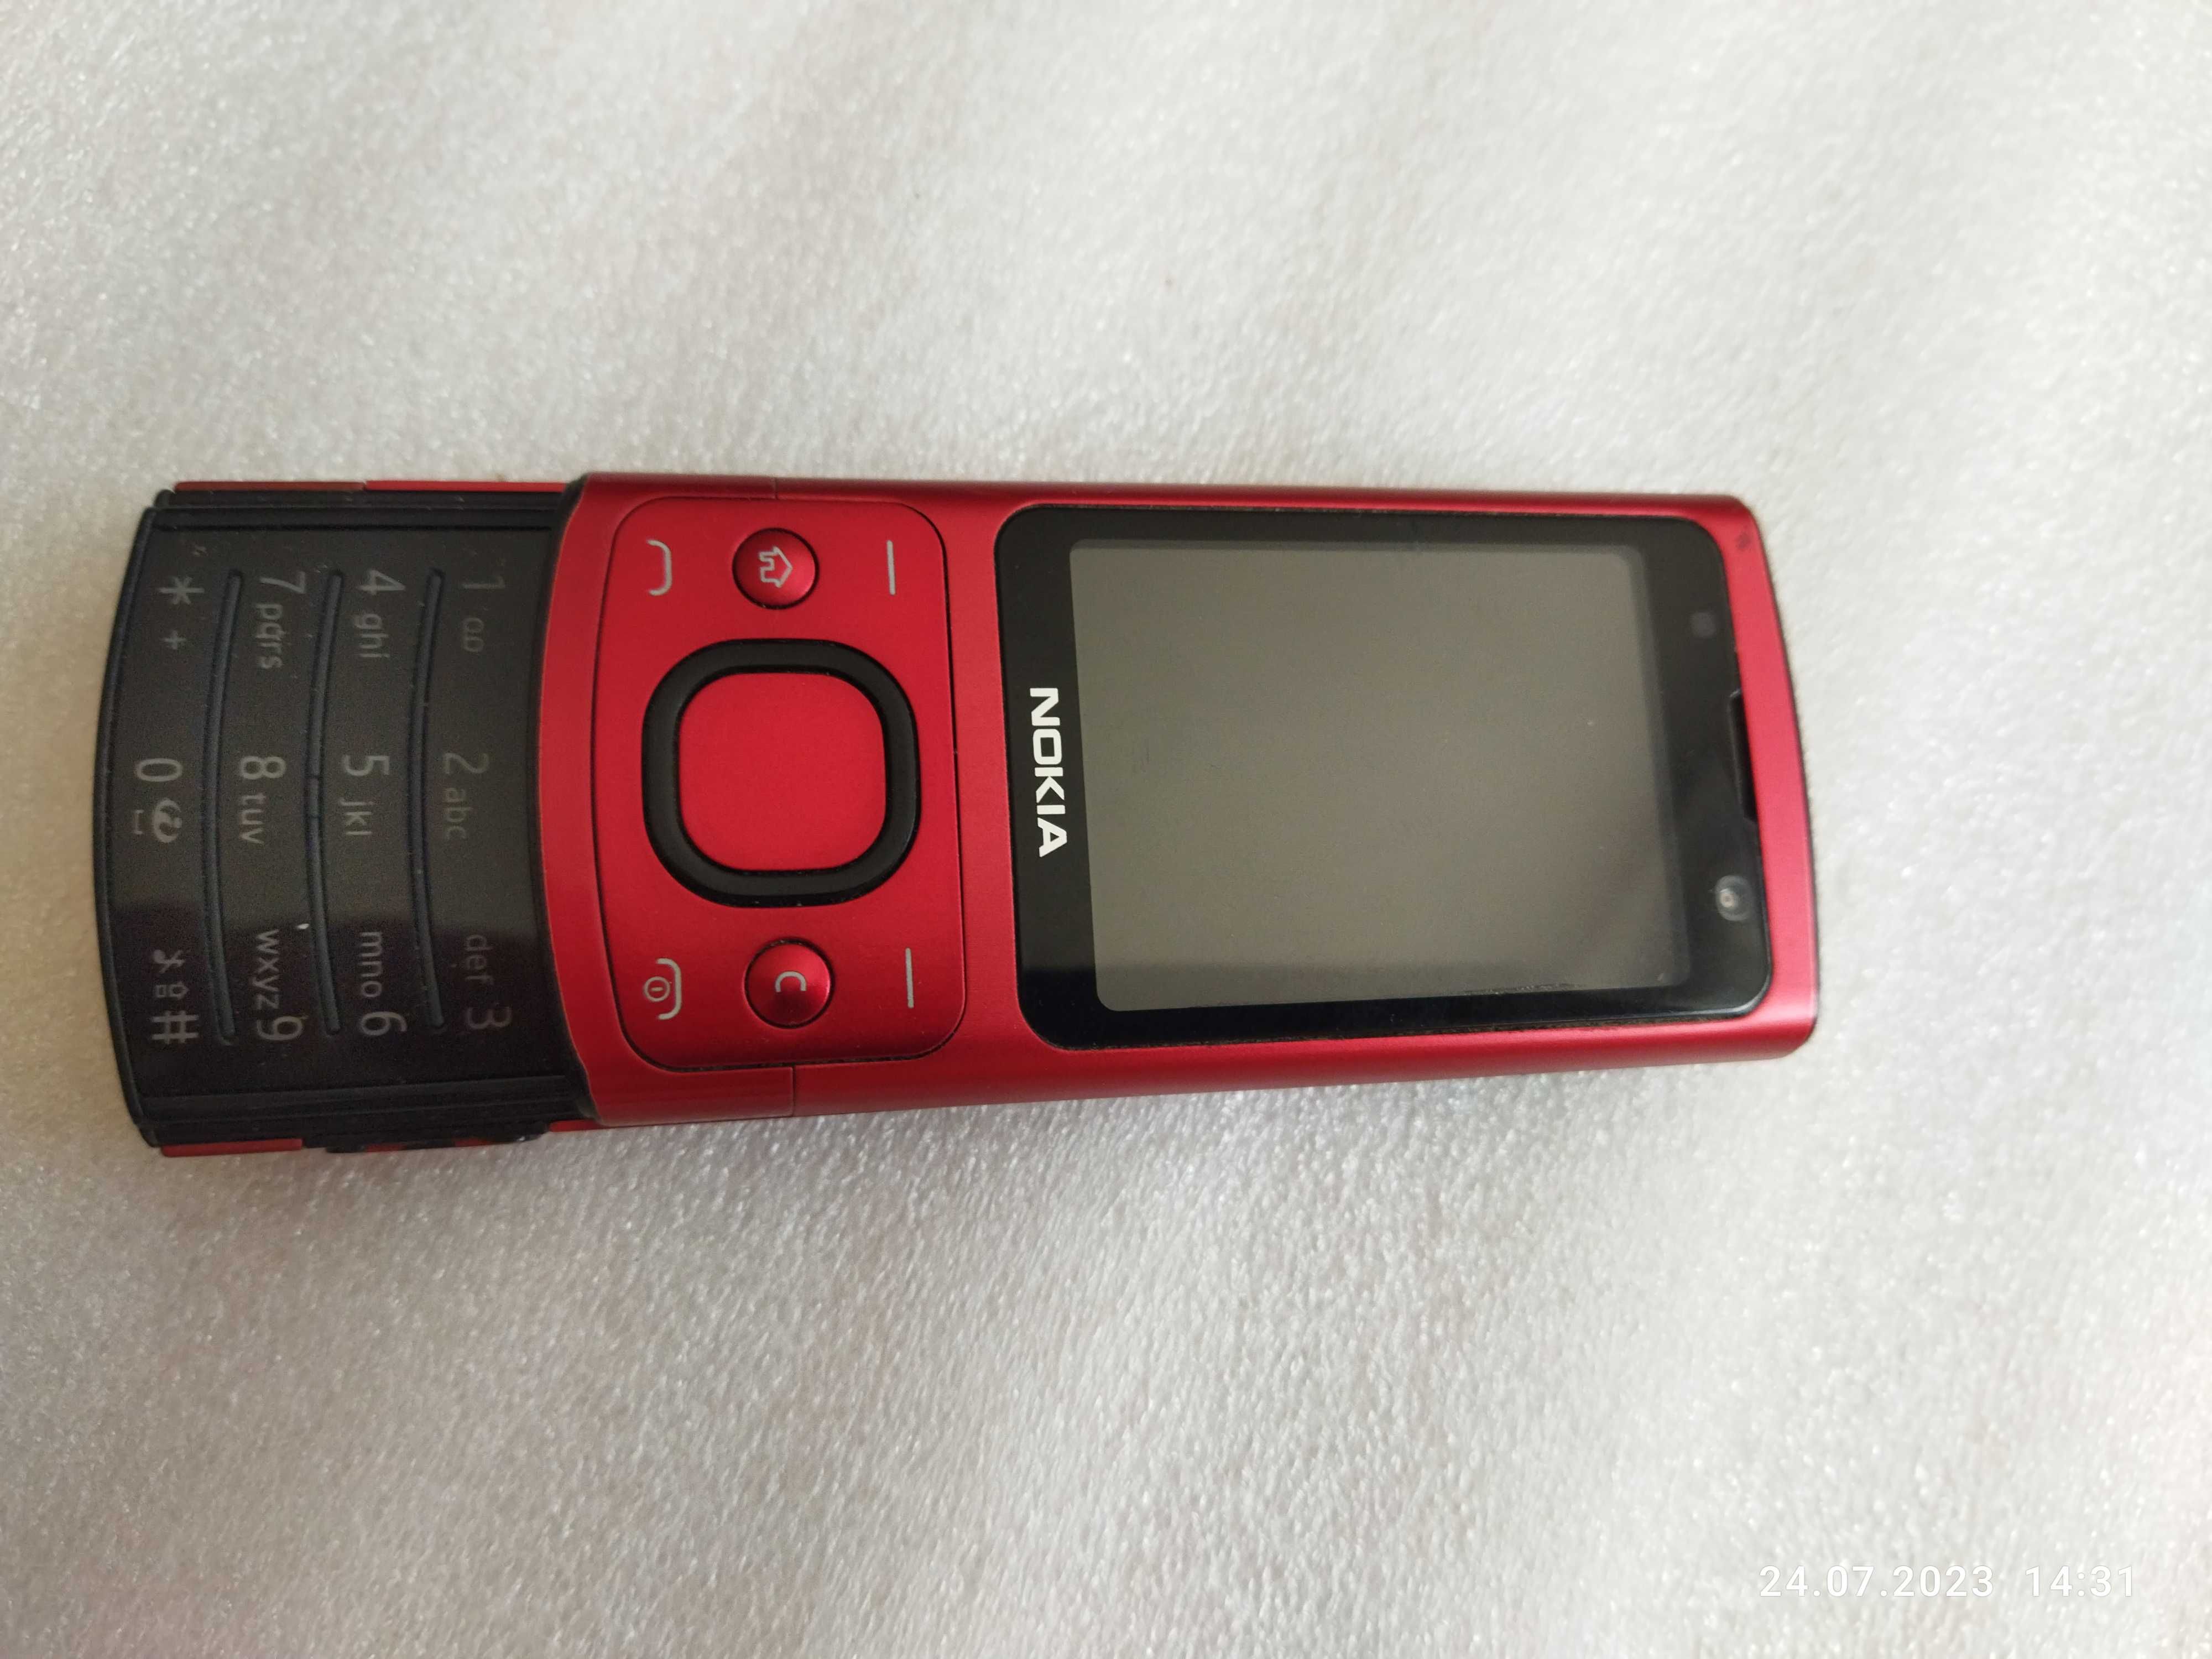 Nokia 6700 Slide W bardzo ładnym stanie